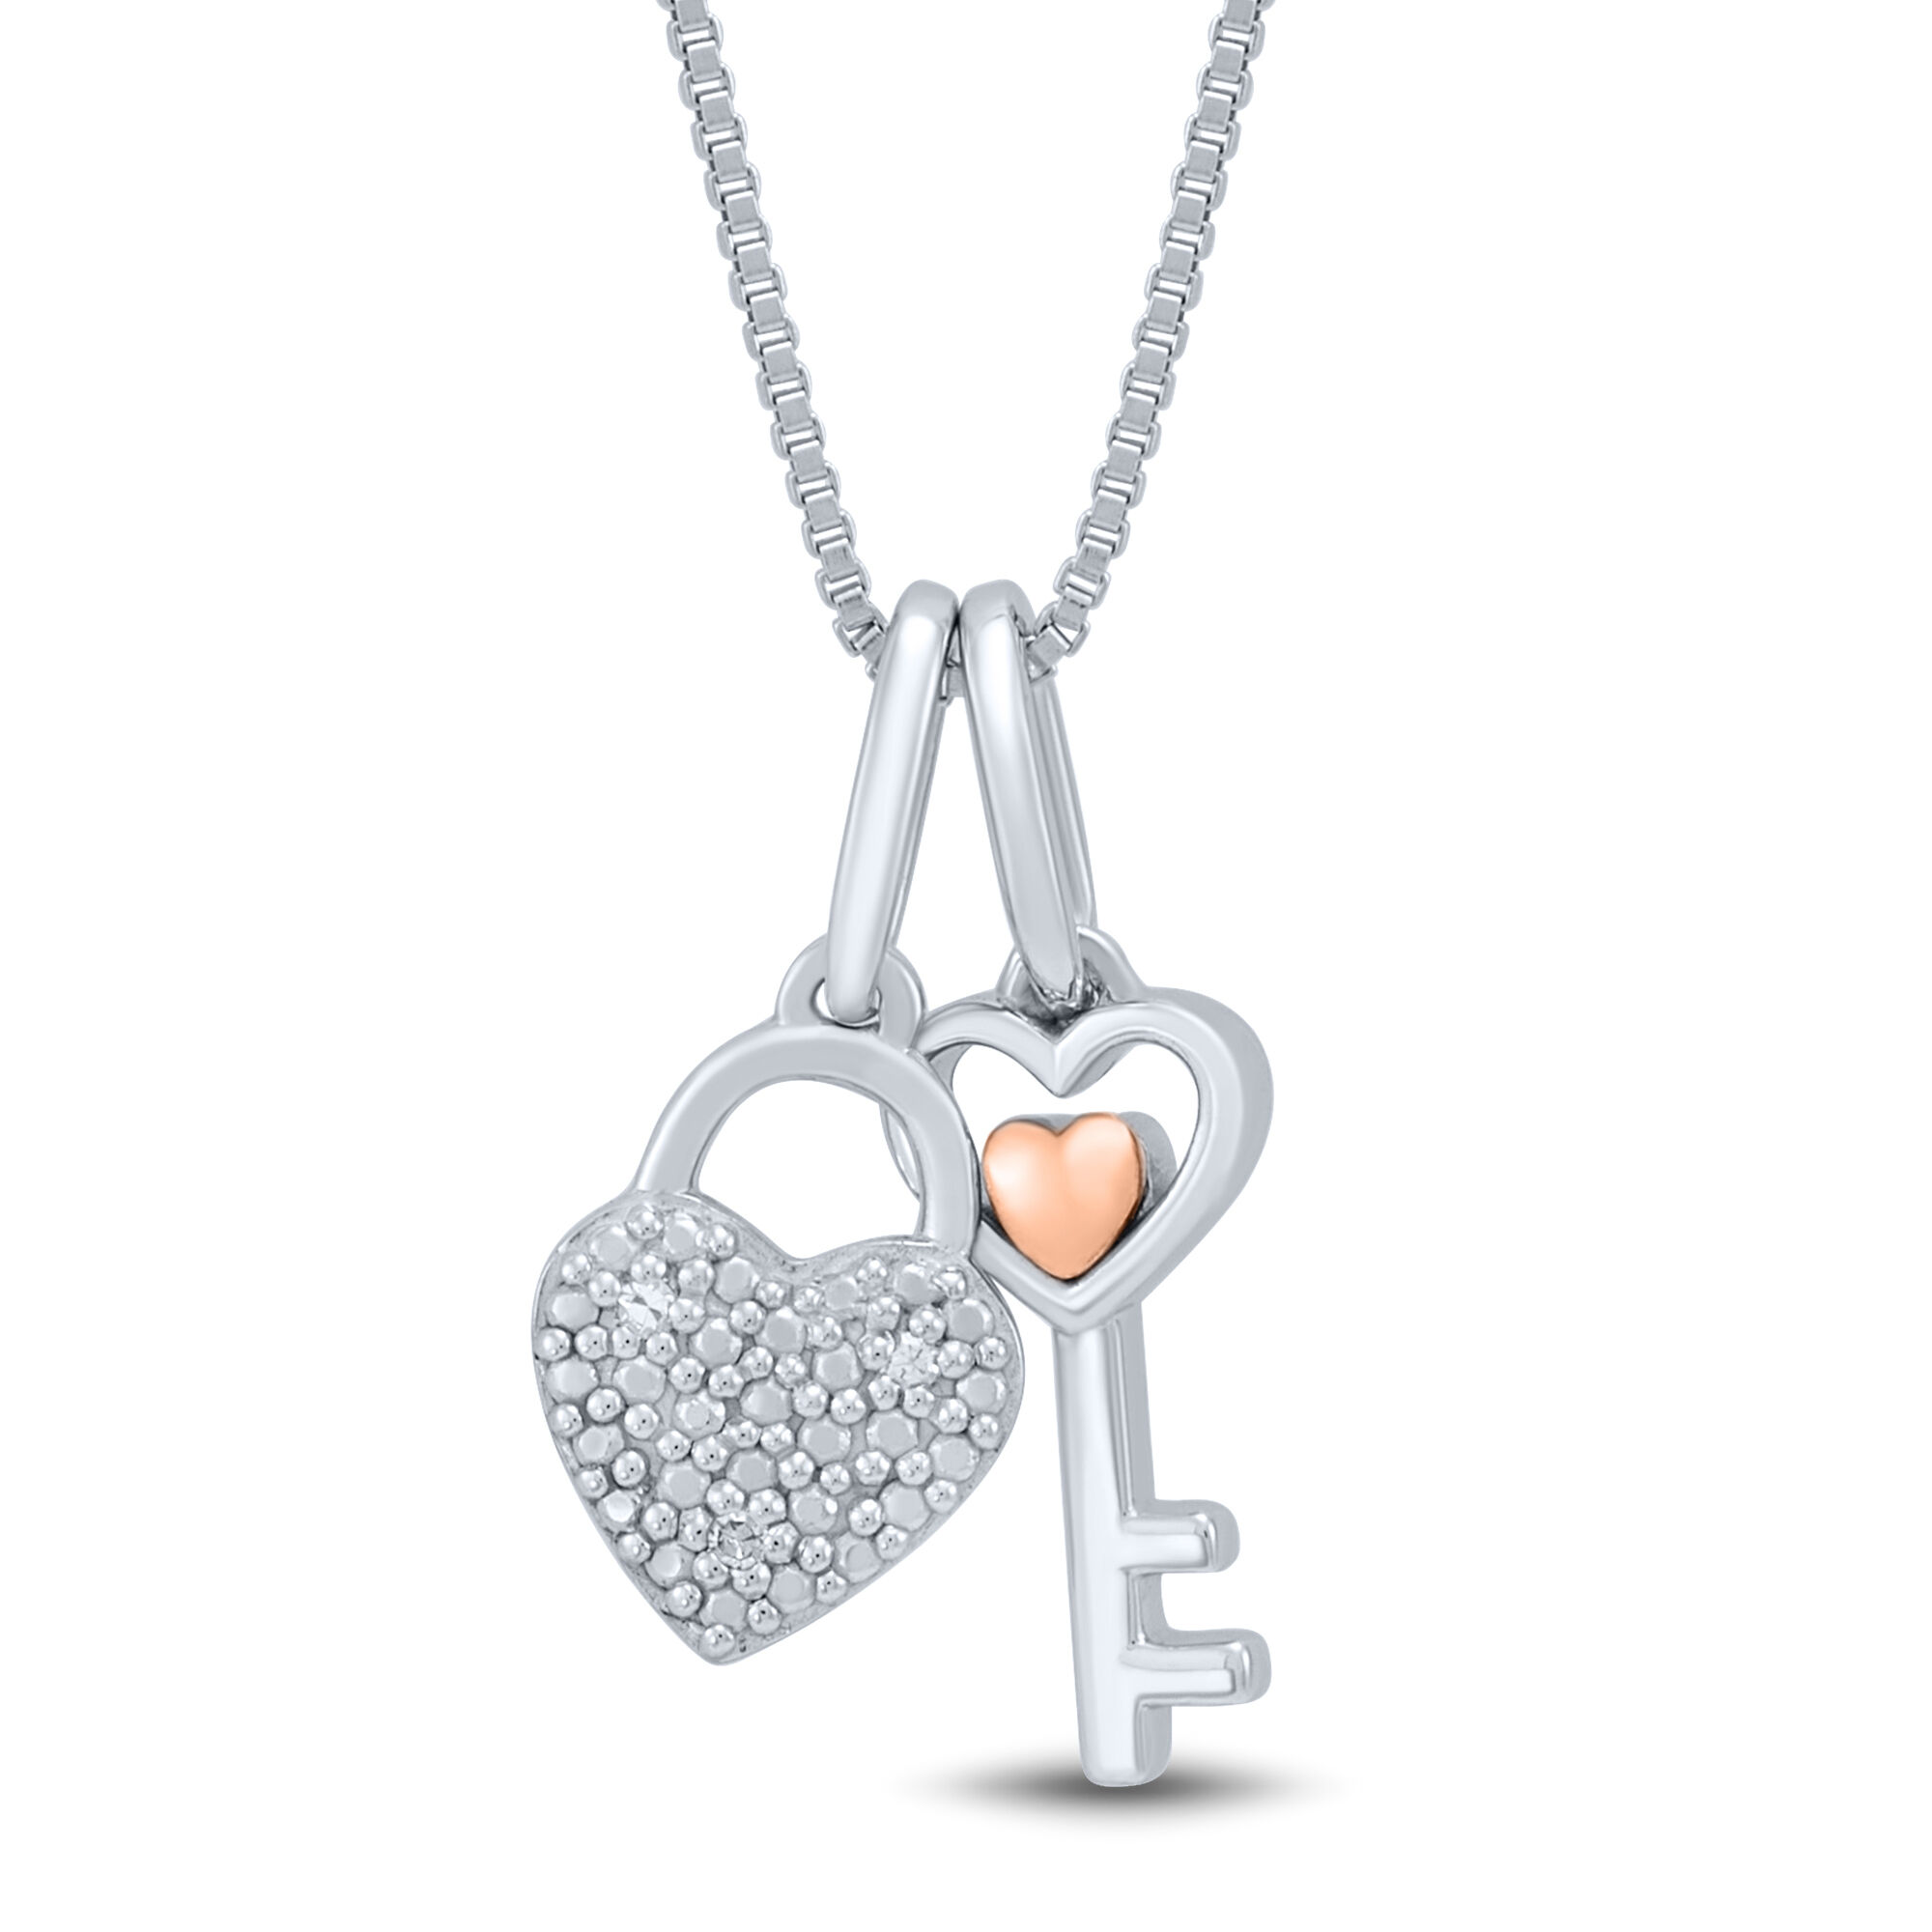 Tiffany Keys Heart Key in Rose Gold with Diamonds, Small | Tiffany & Co.